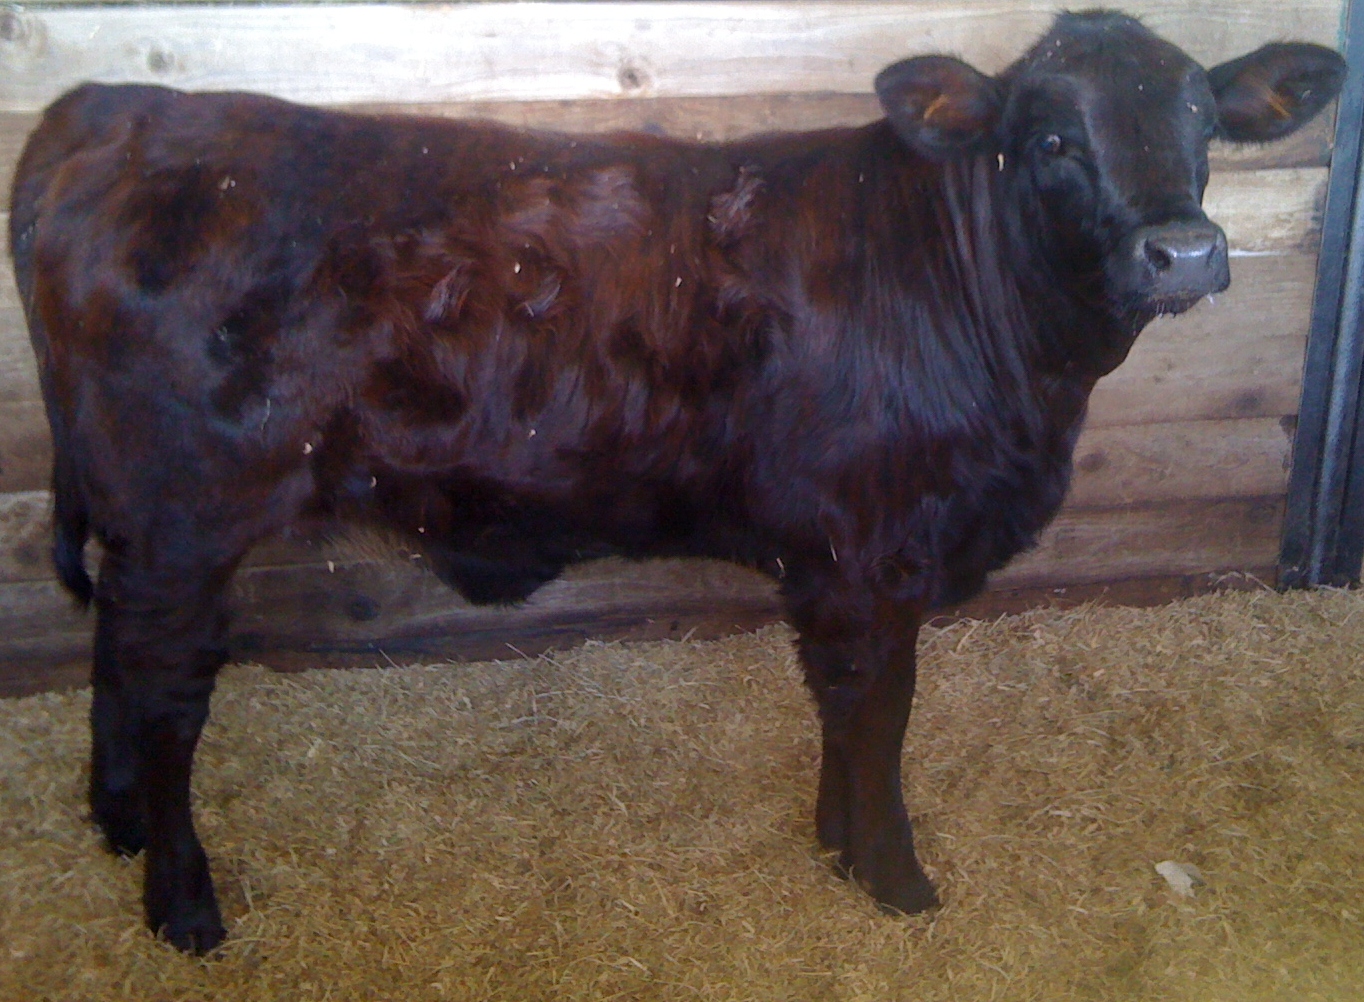 Brangus heifer named Nicky born 8-12-11